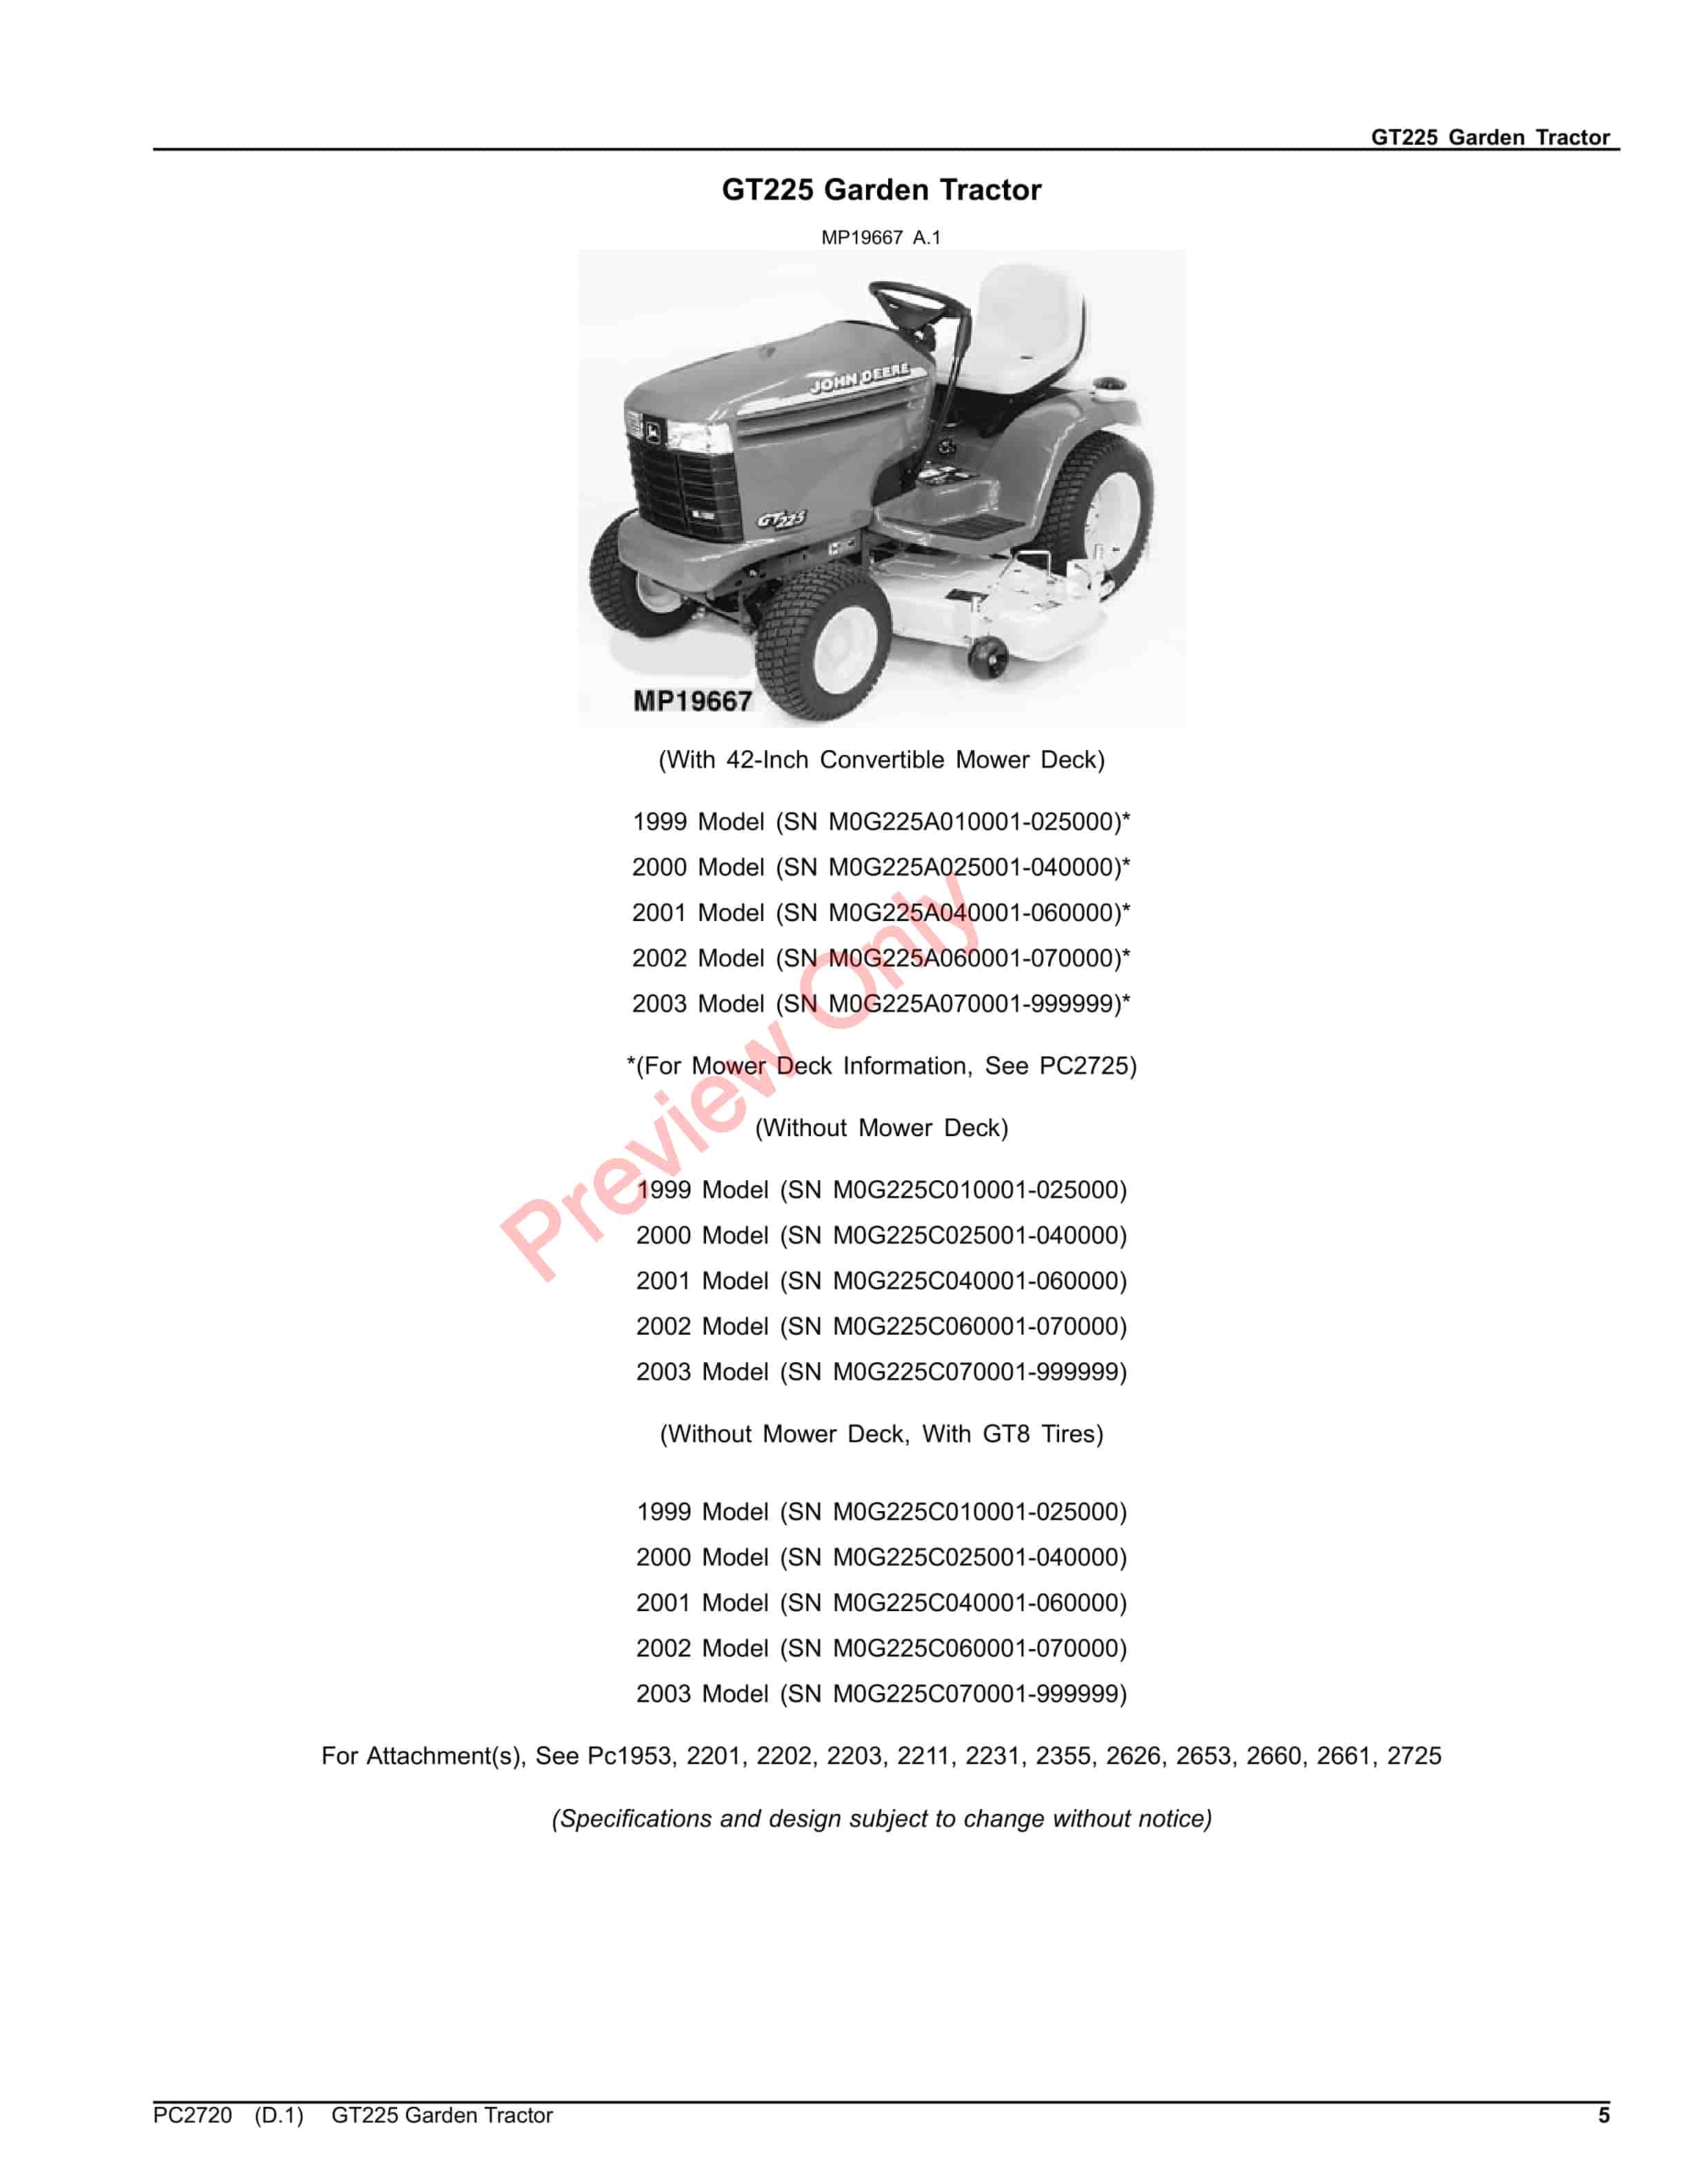 John Deere GT225 Garden Tractor Parts Catalog PC2720 01JUL22-5